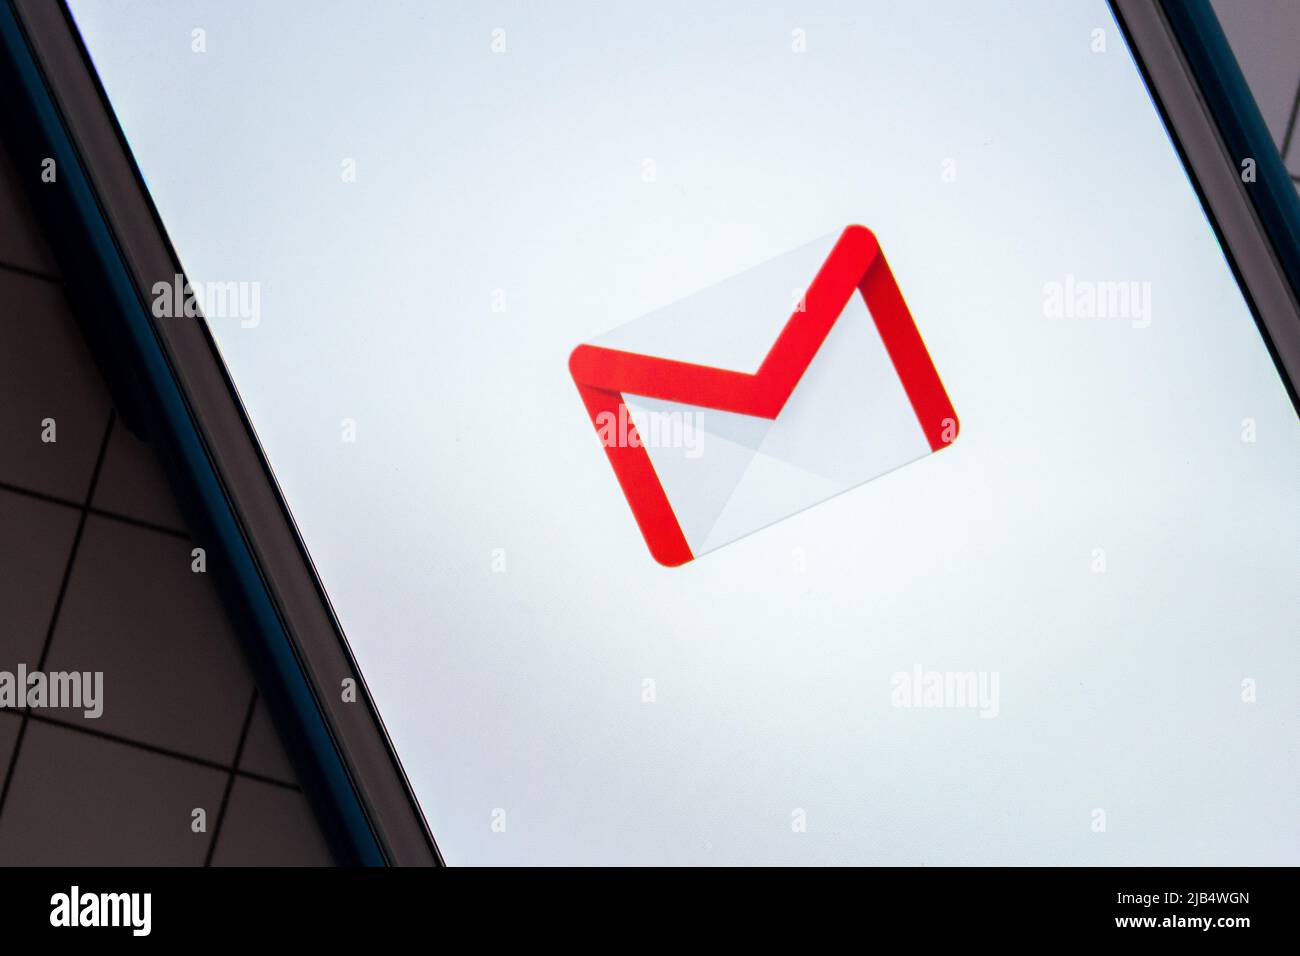 Logo de Gmail, un service de messagerie gratuit développé par Google, sur fond blanc sur iPhone. En 2018, Gmail comptait 1,5 milliards d'utilisateurs actifs dans le monde entier Banque D'Images